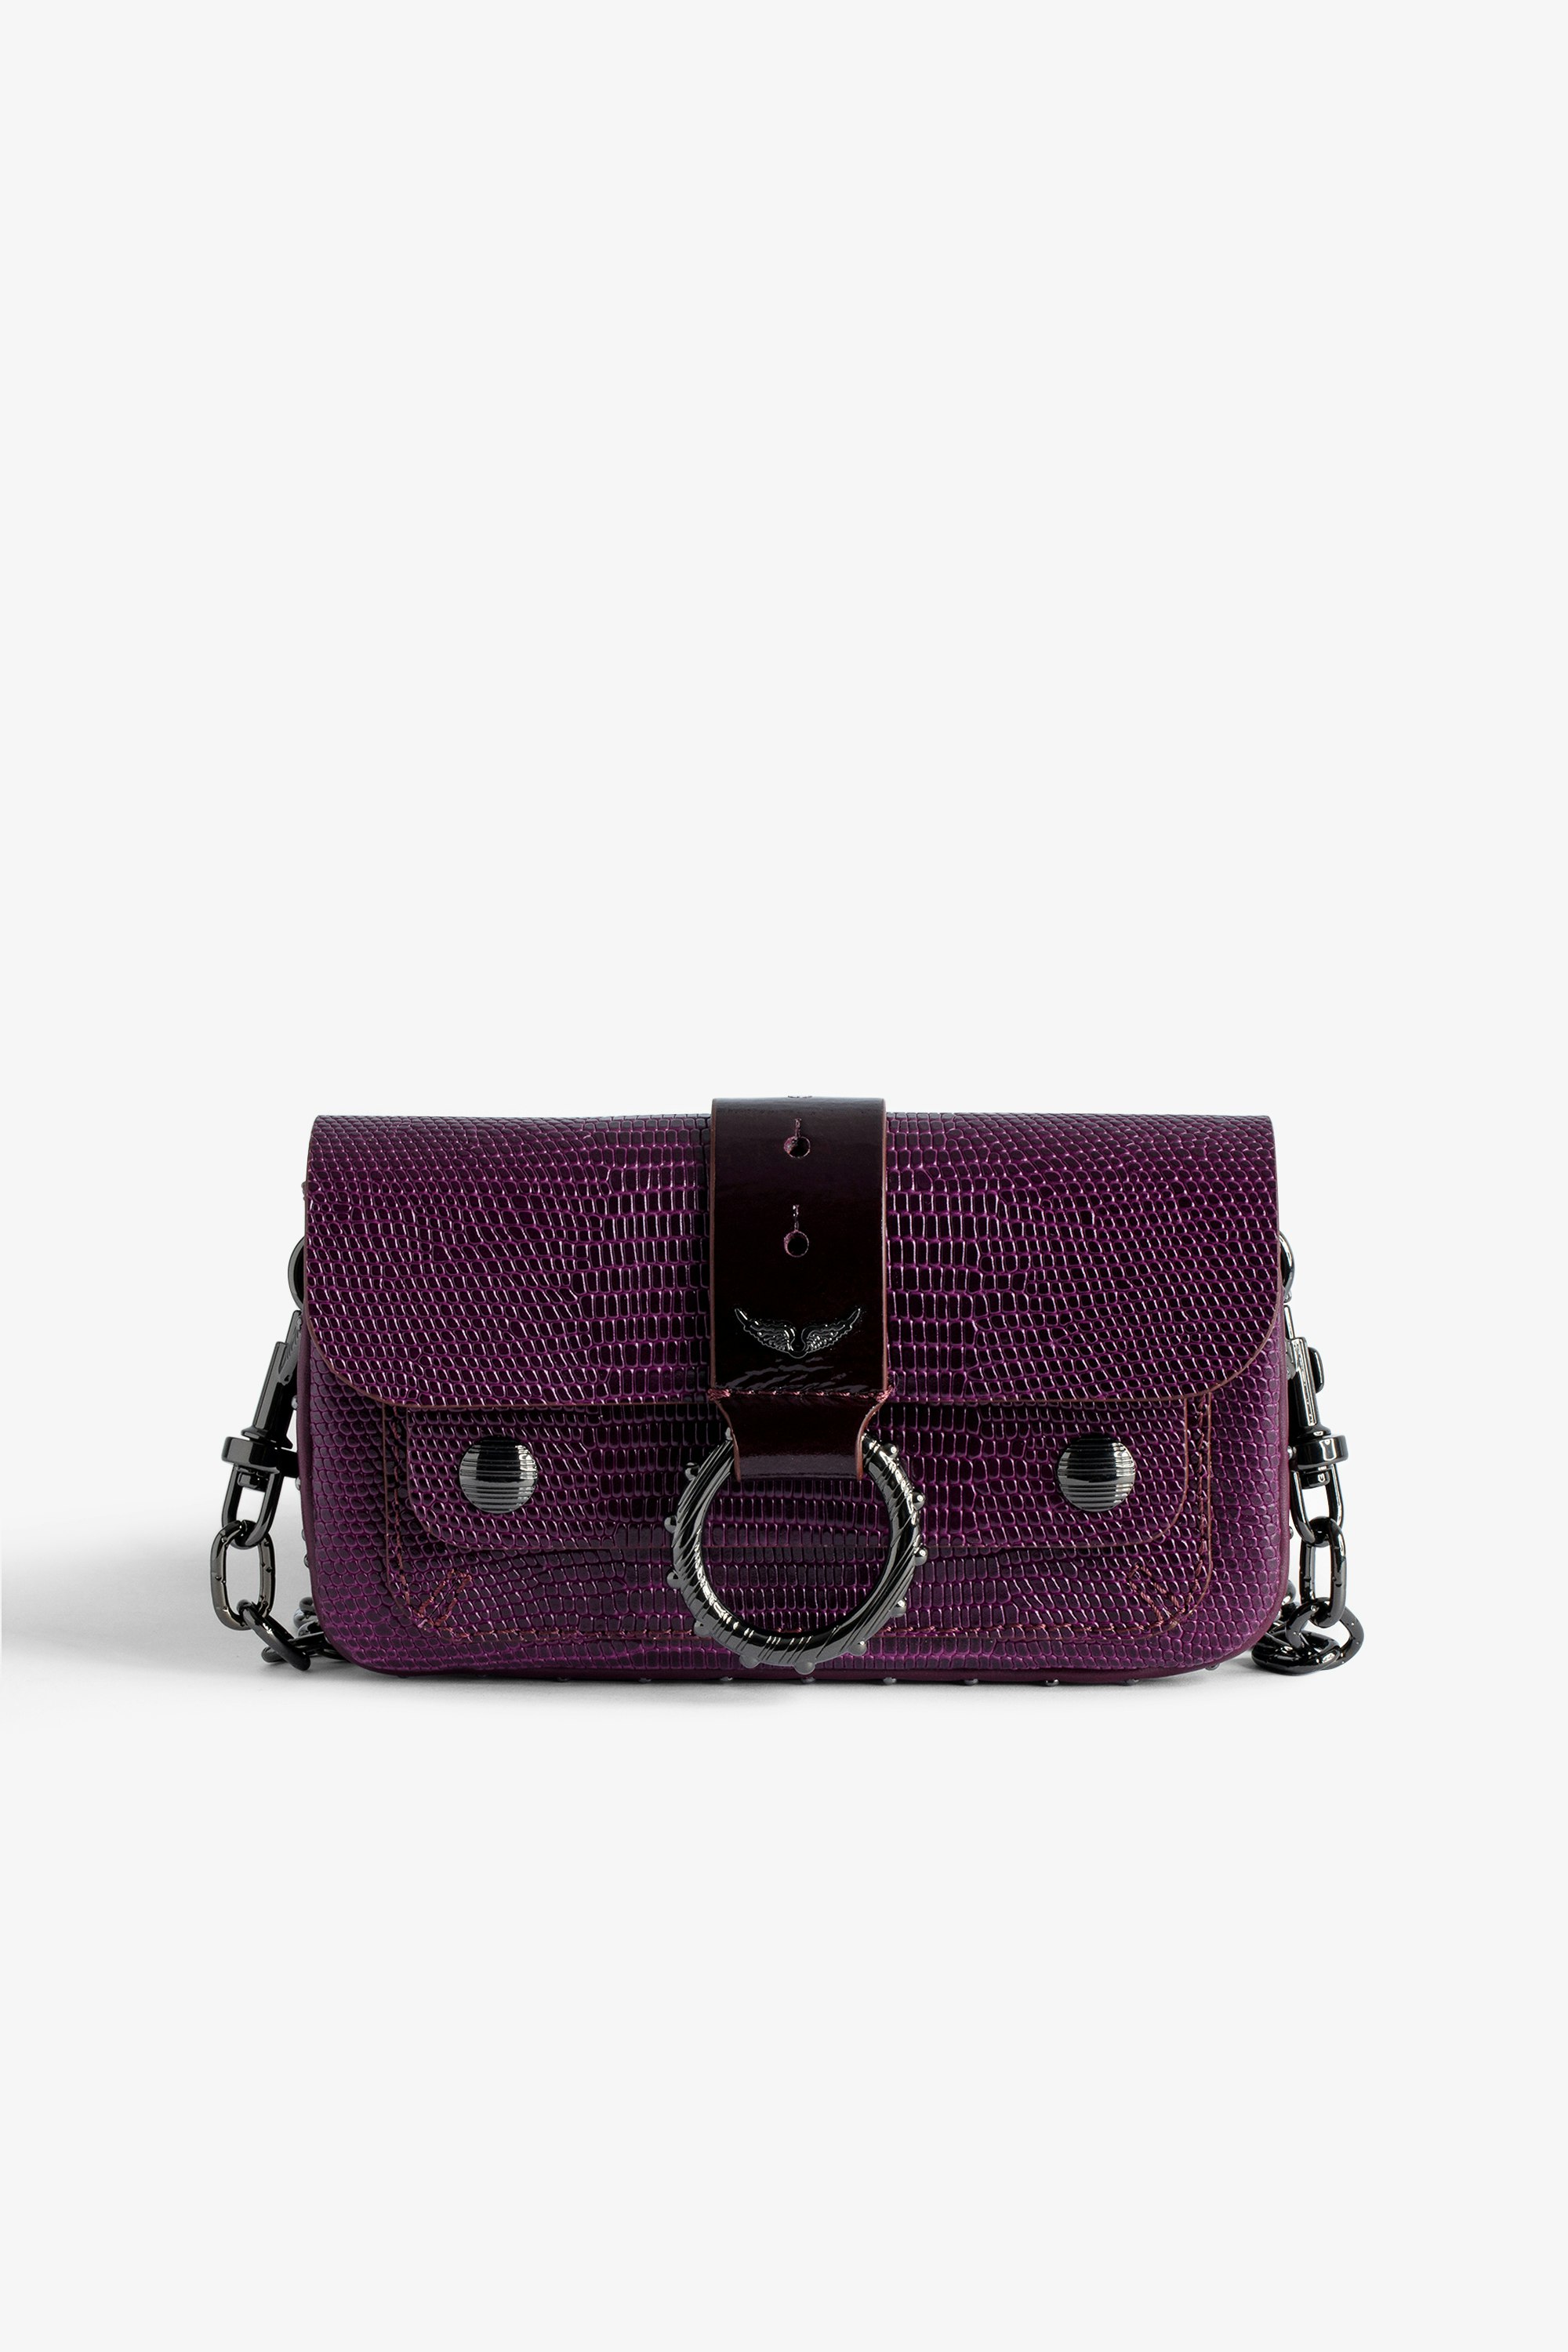 Tasche Kate Wallet Prägung - Mini-Tasche aus geprägtem Leder in Bordeauxrot mit Leguan-Effekt und Metallkette für Damen.